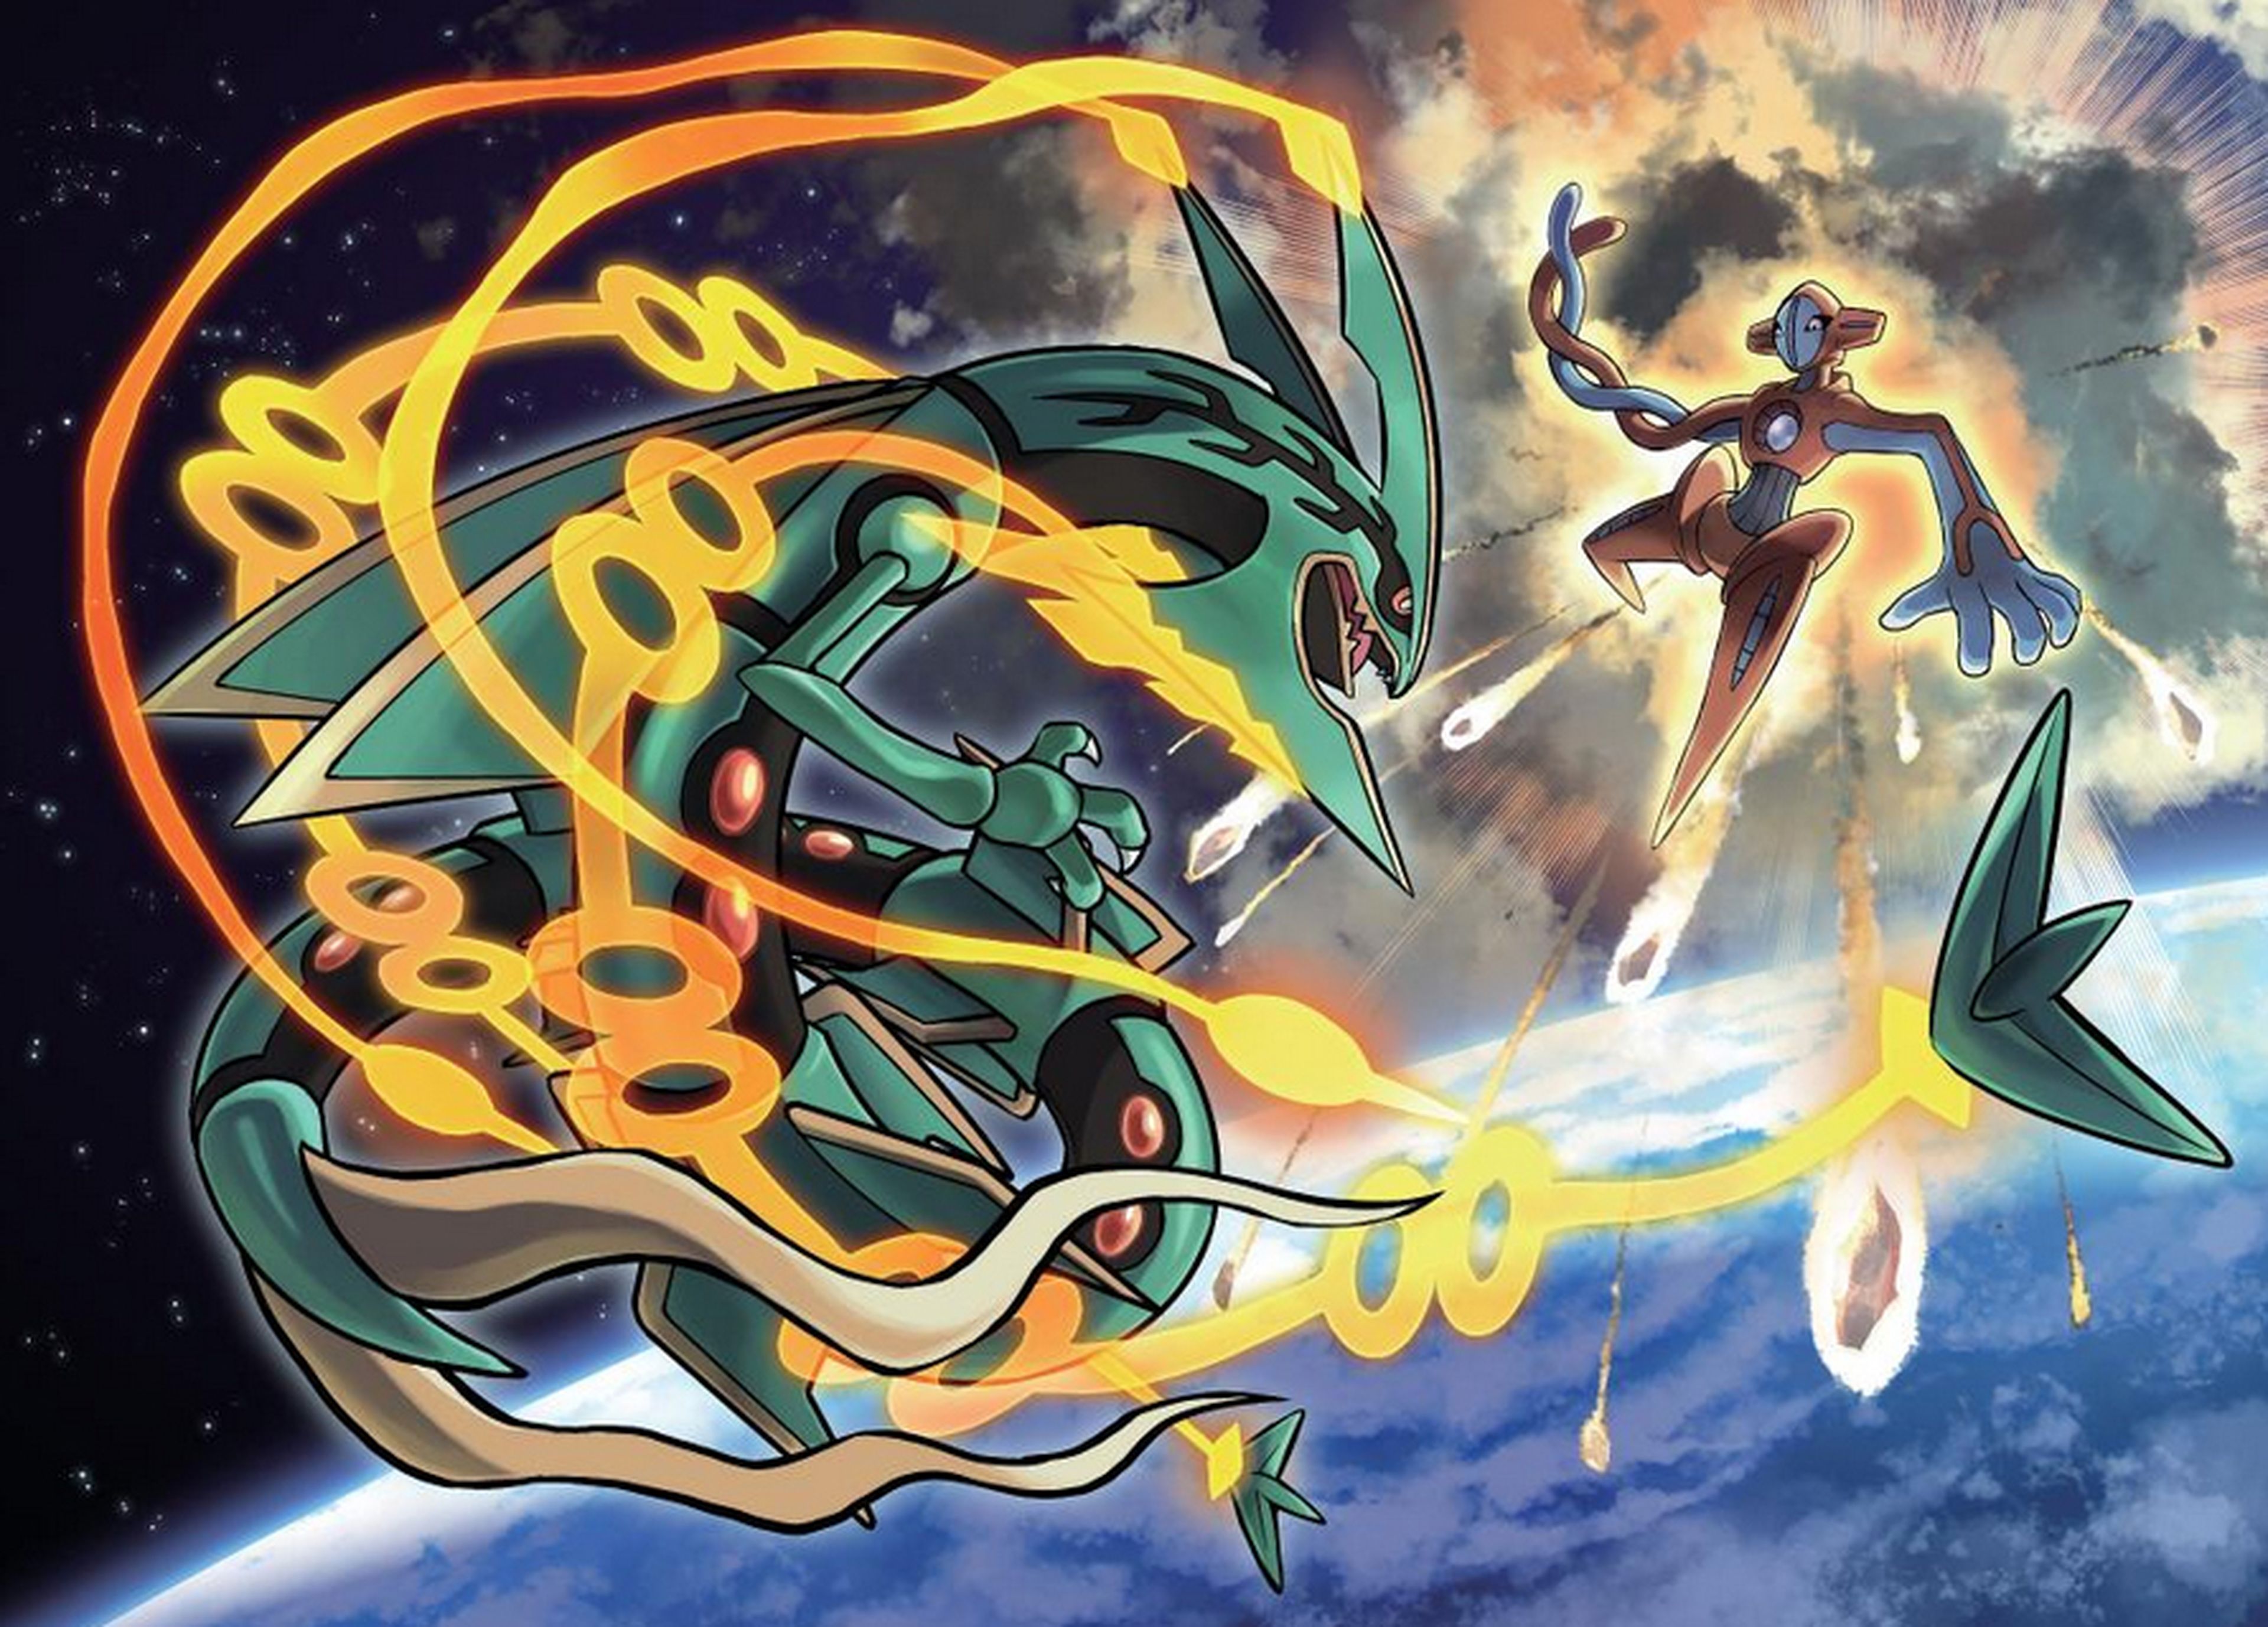 Descubre el Episodio Delta de Pokémon Rubí Omega y Pokémon Zafiro Alfa